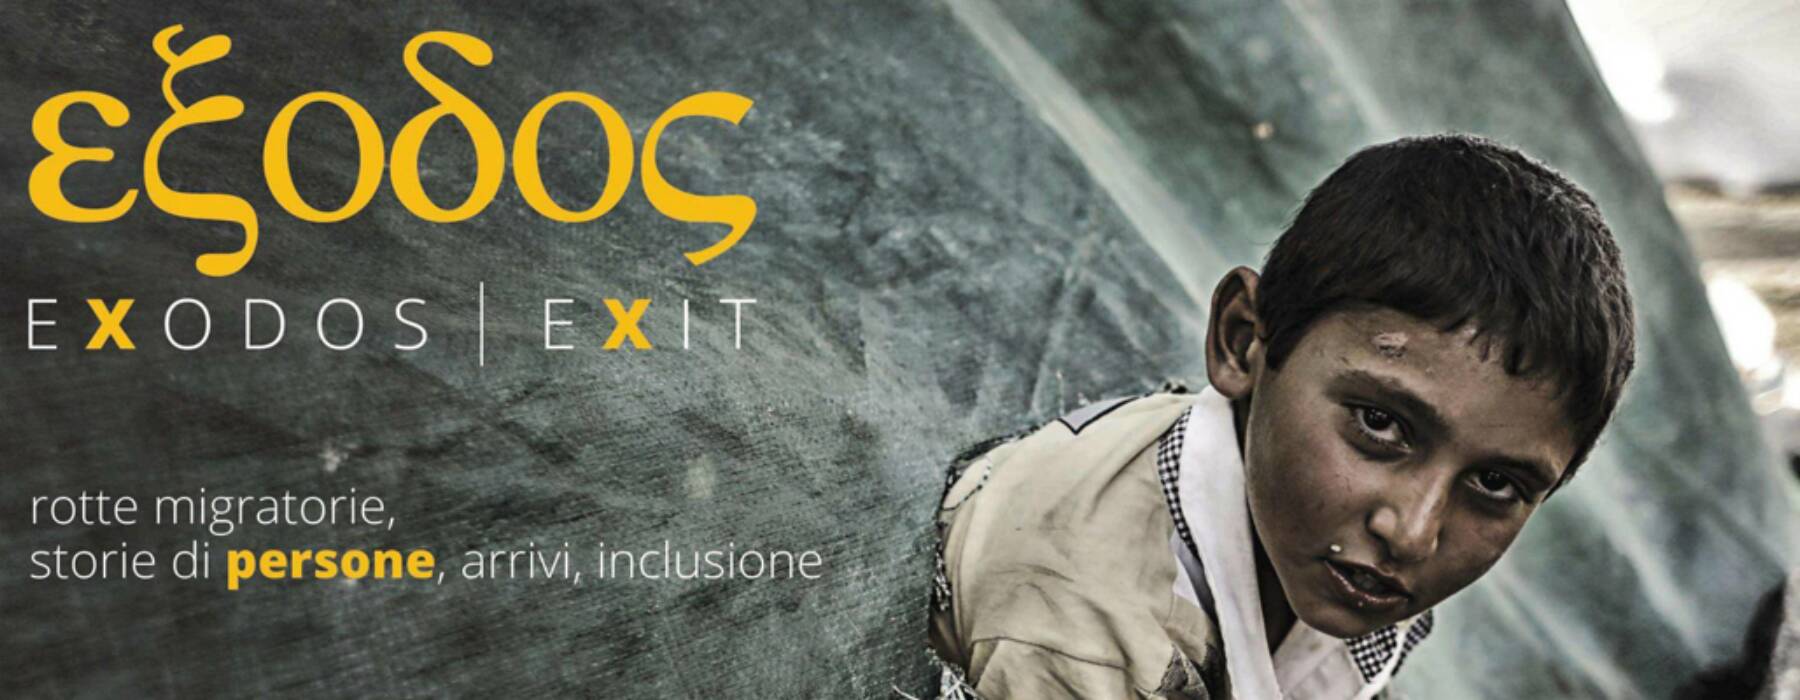  Arriva a Bra la mostra “Exodos| Exit – rotte migratorie, storie di persone, arrivi, inclusione”